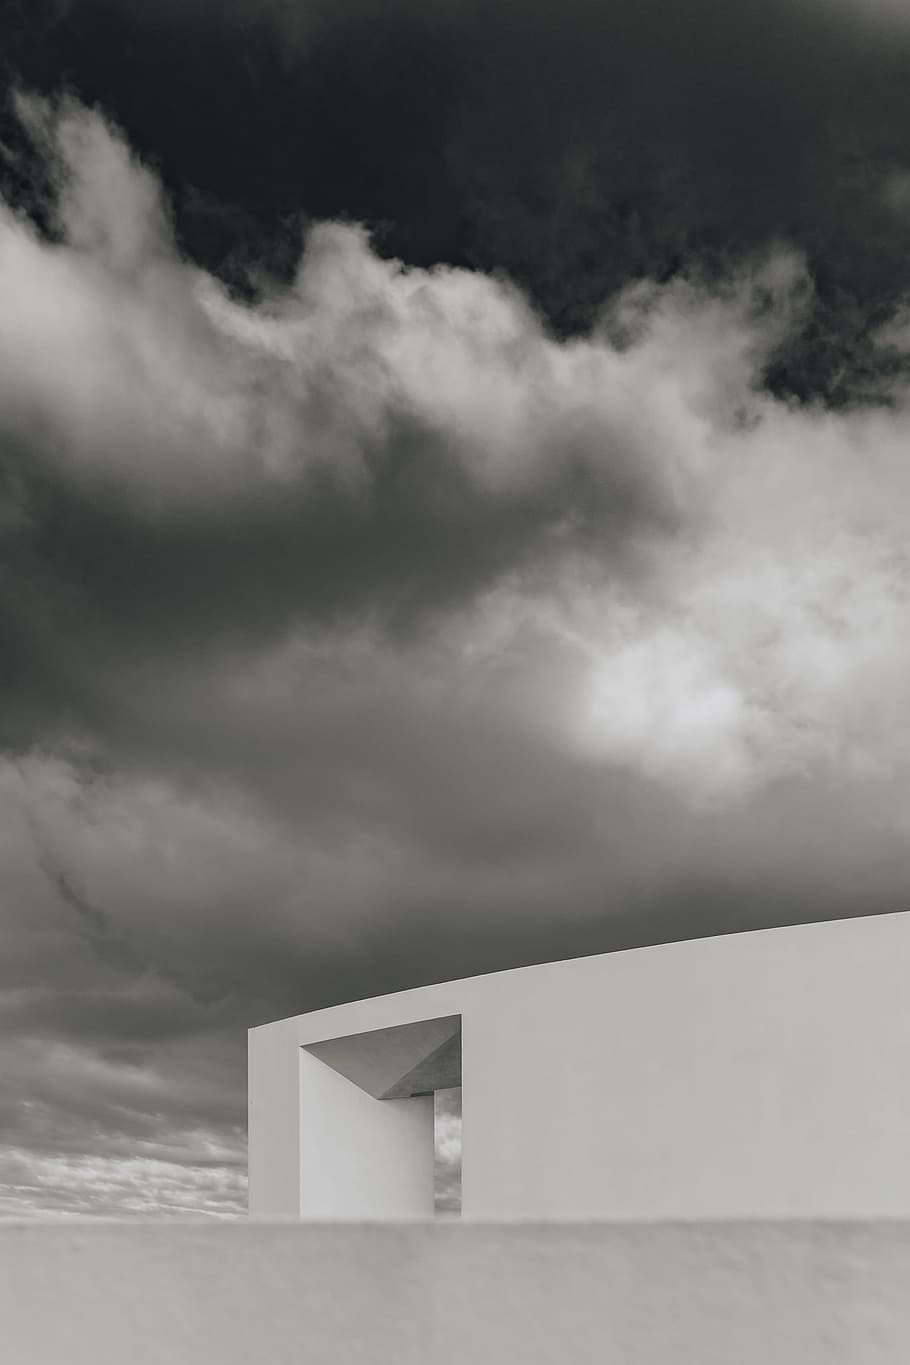 casas portuguesas contemporáneas, arquitectura, diseño, fachada, casa, portugal, algarve, nube - cielo, cielo, estructura construida